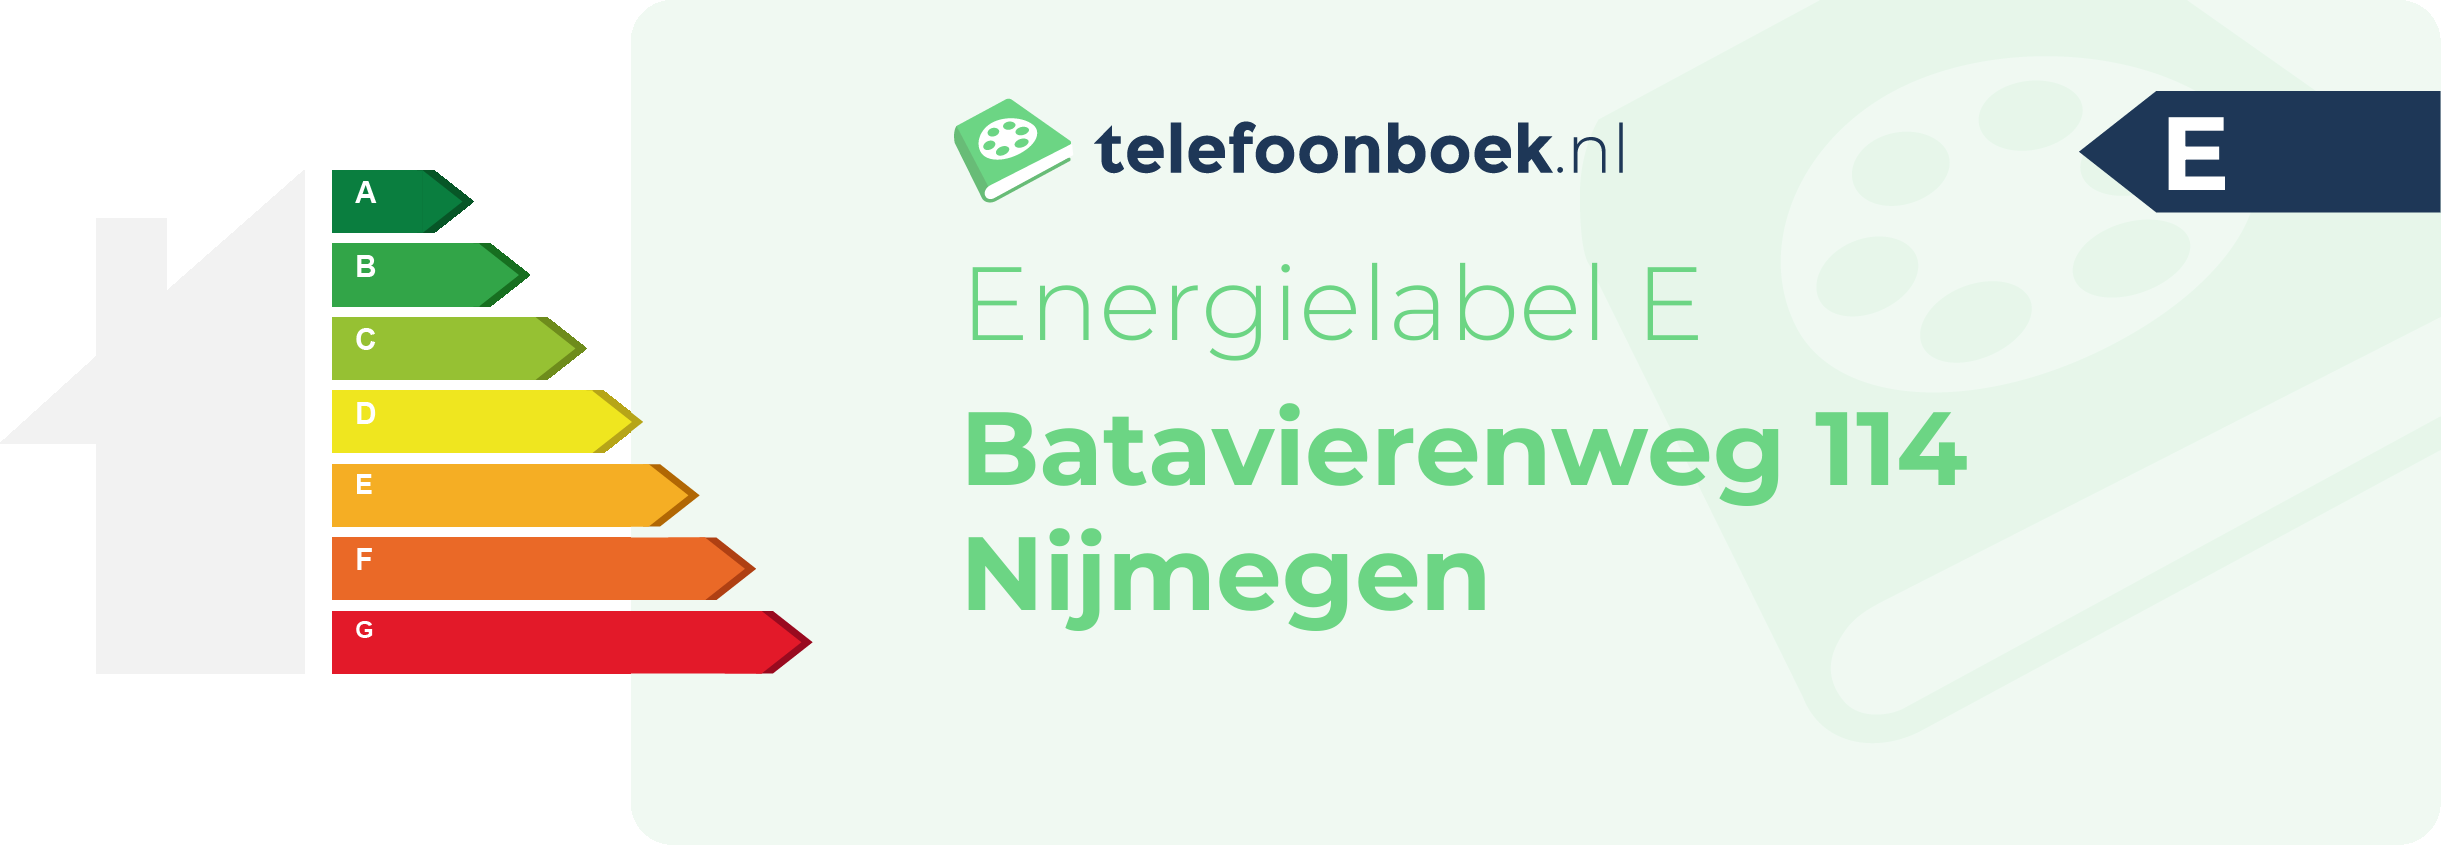 Energielabel Batavierenweg 114 Nijmegen